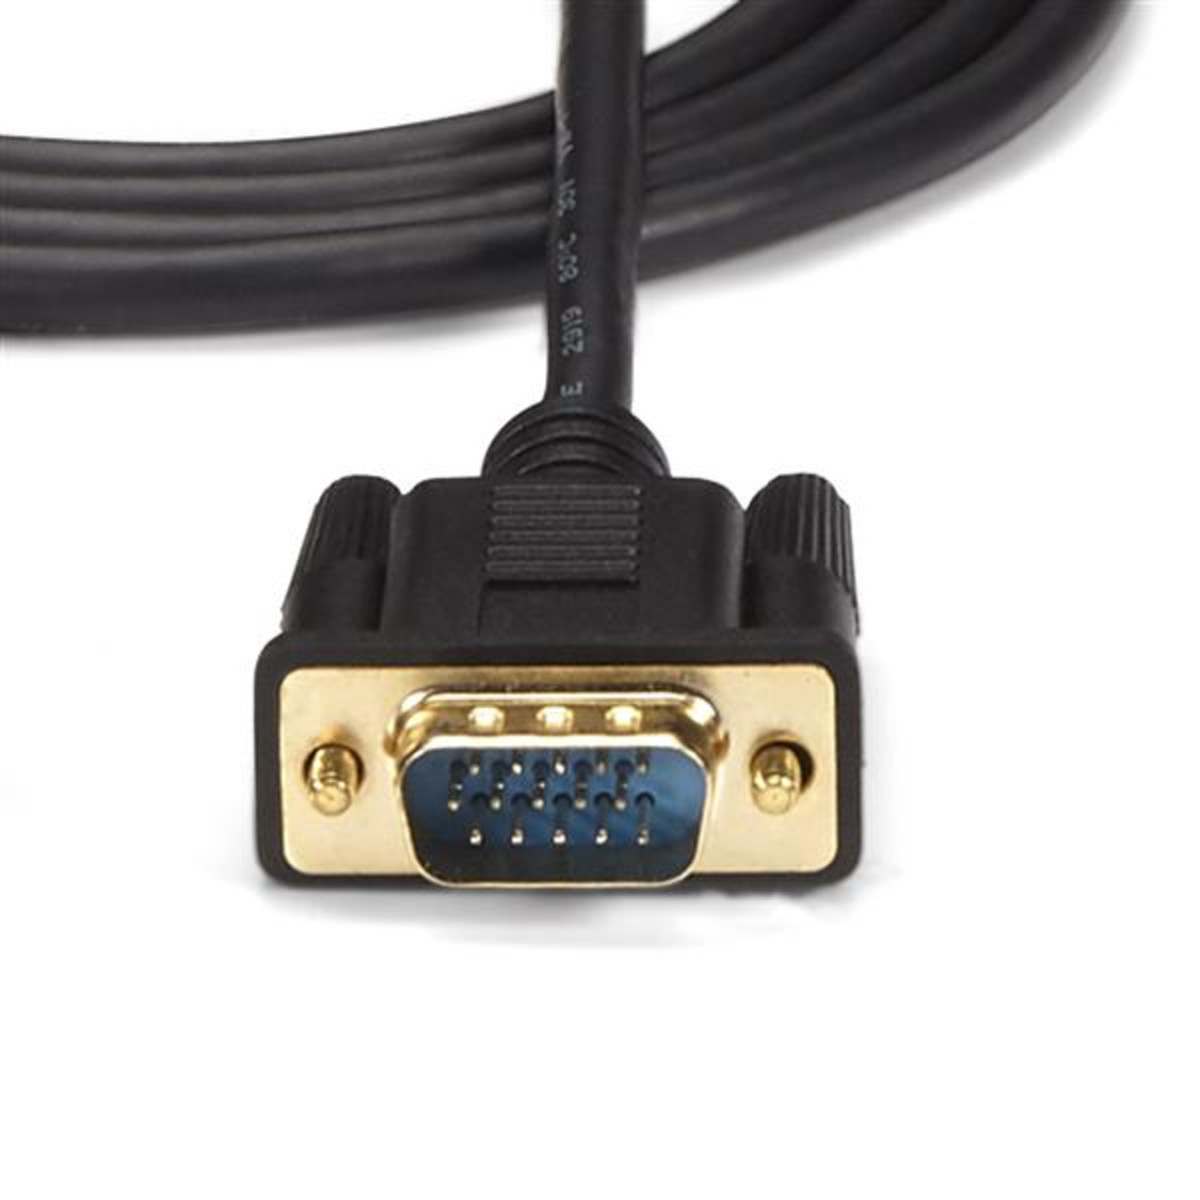 10' HDMI to VGA active converter cable